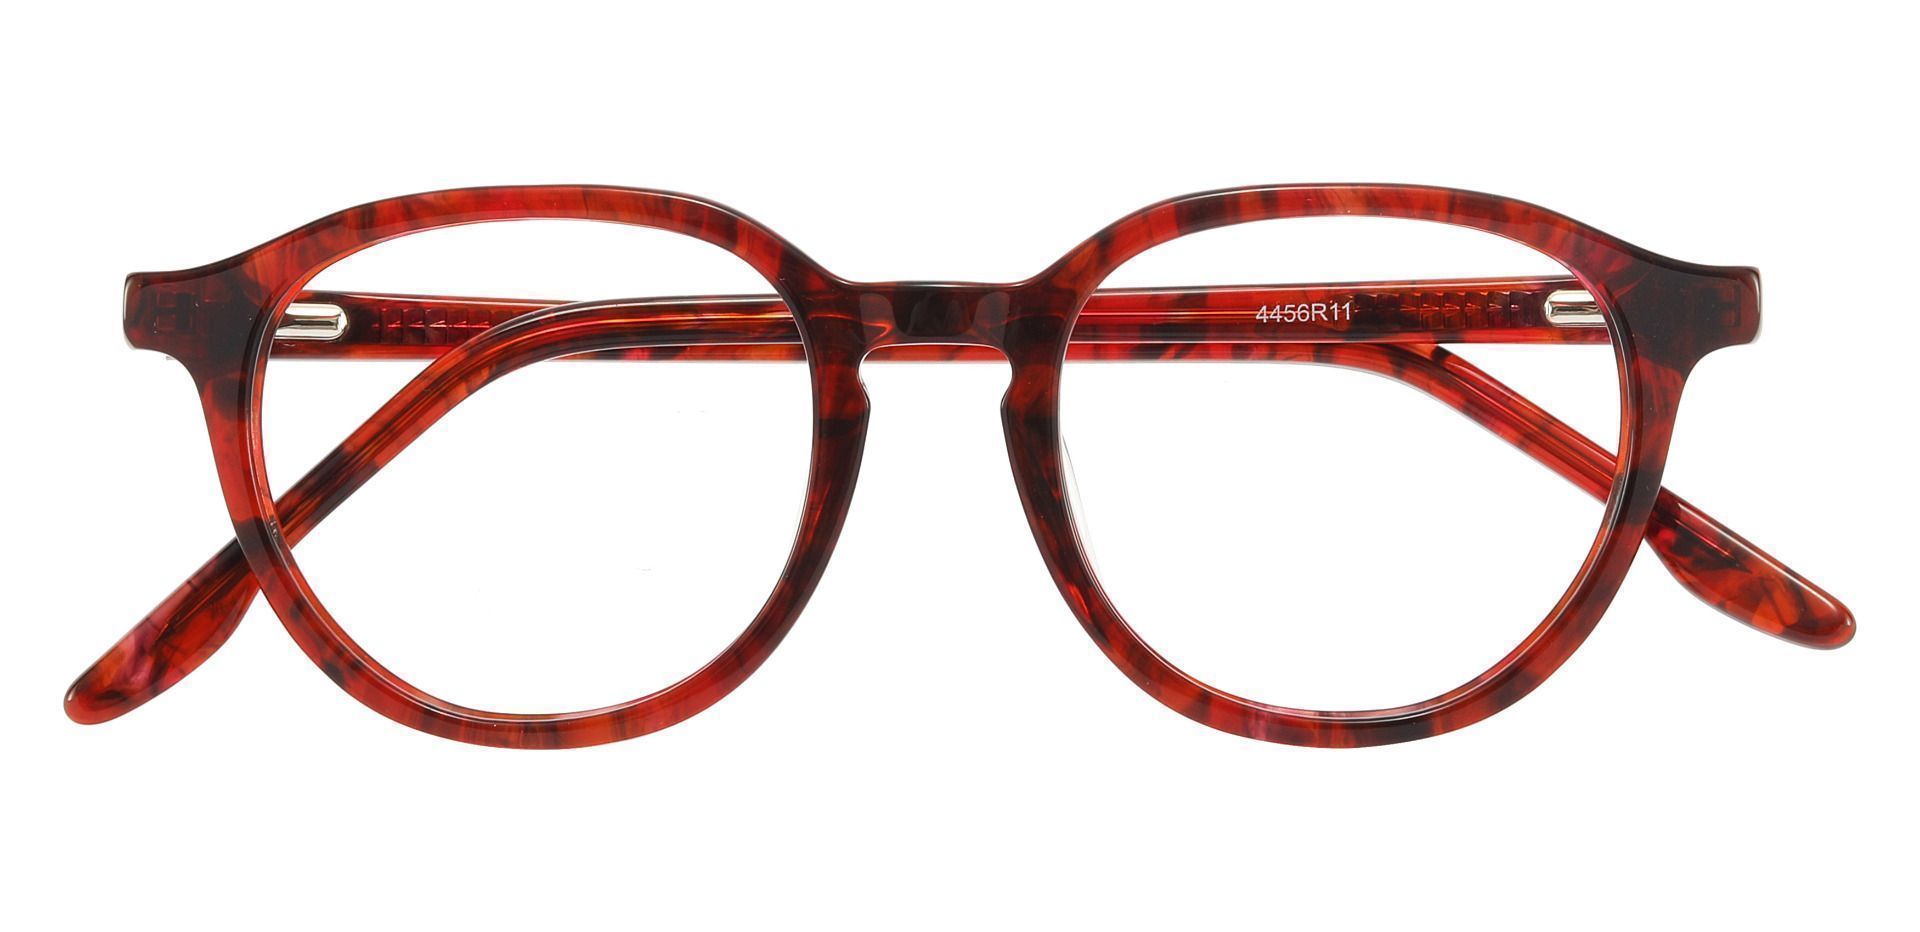 Ashley Oval Prescription Glasses - Red